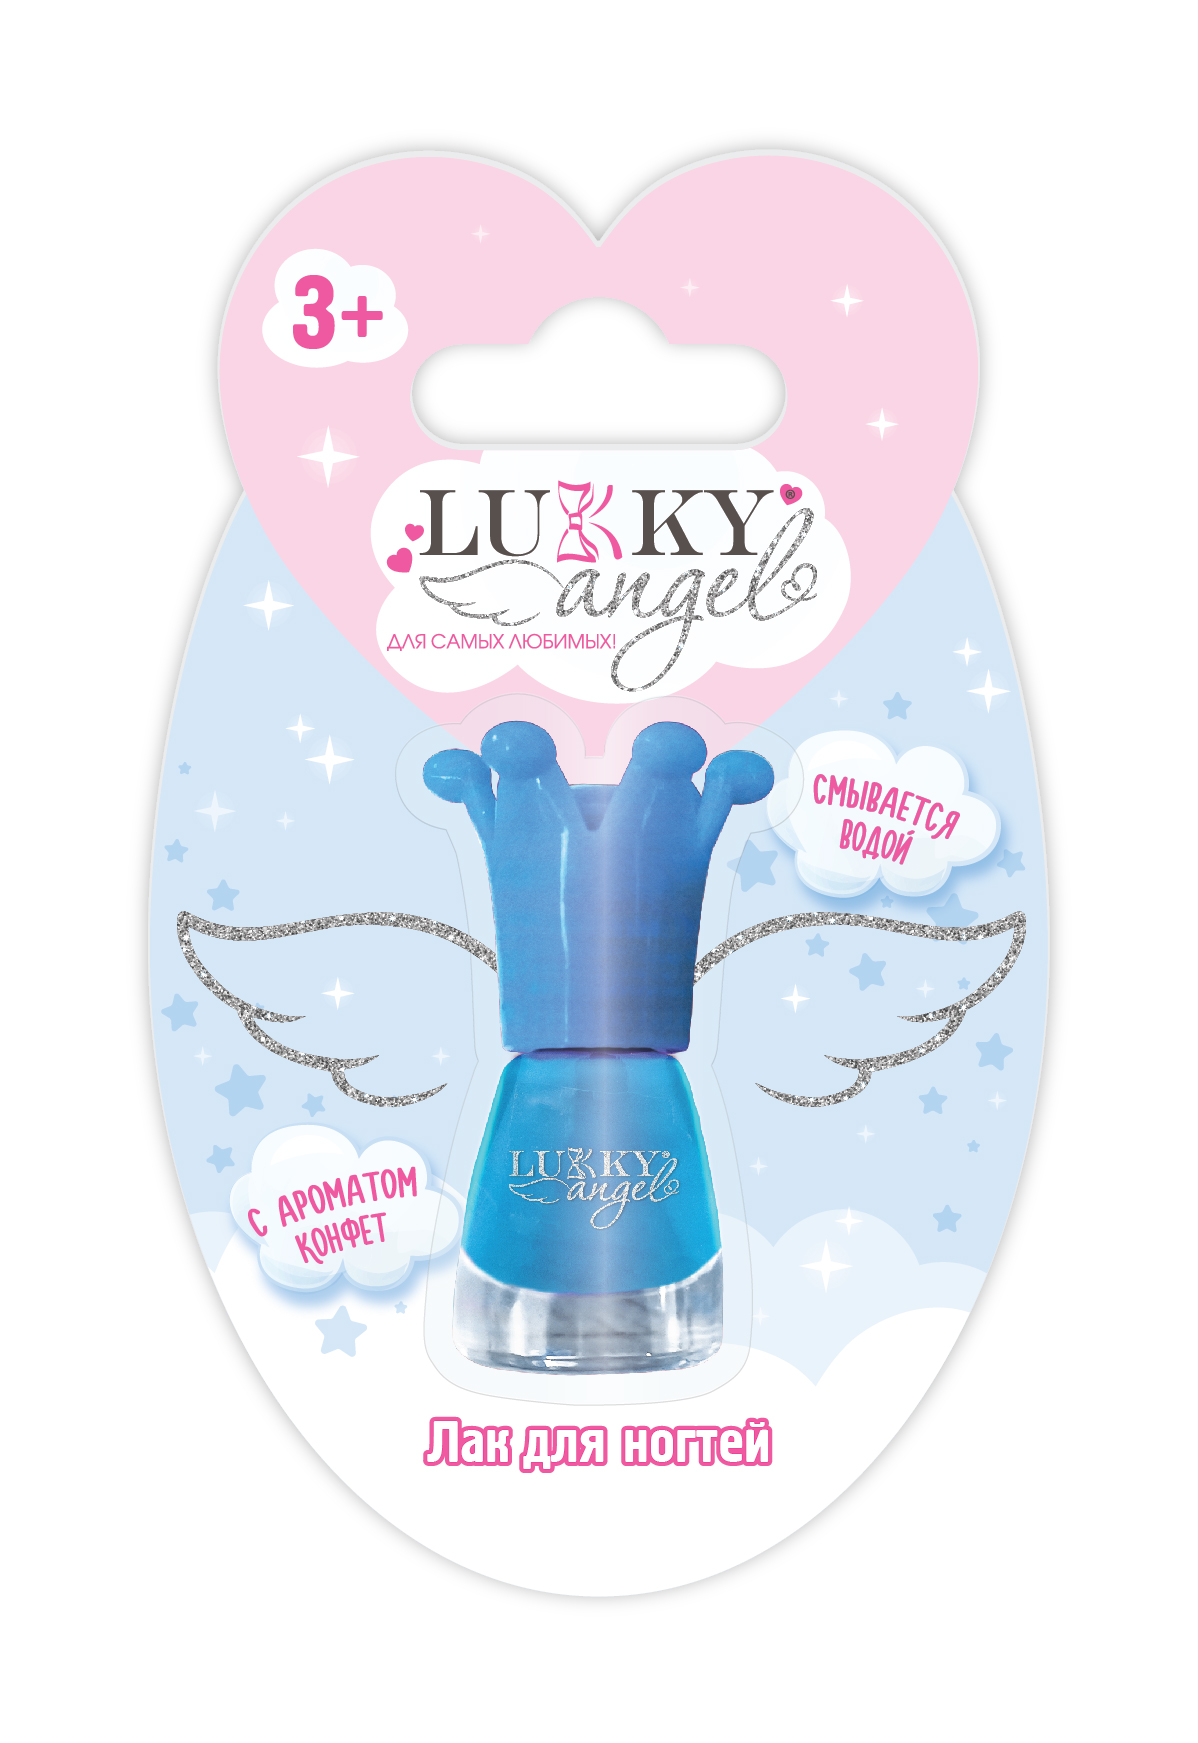 Лак для ногтей Lukky Angel голубой перламутр лак для ногтей jucy pastel тон 310 голубой 6мл